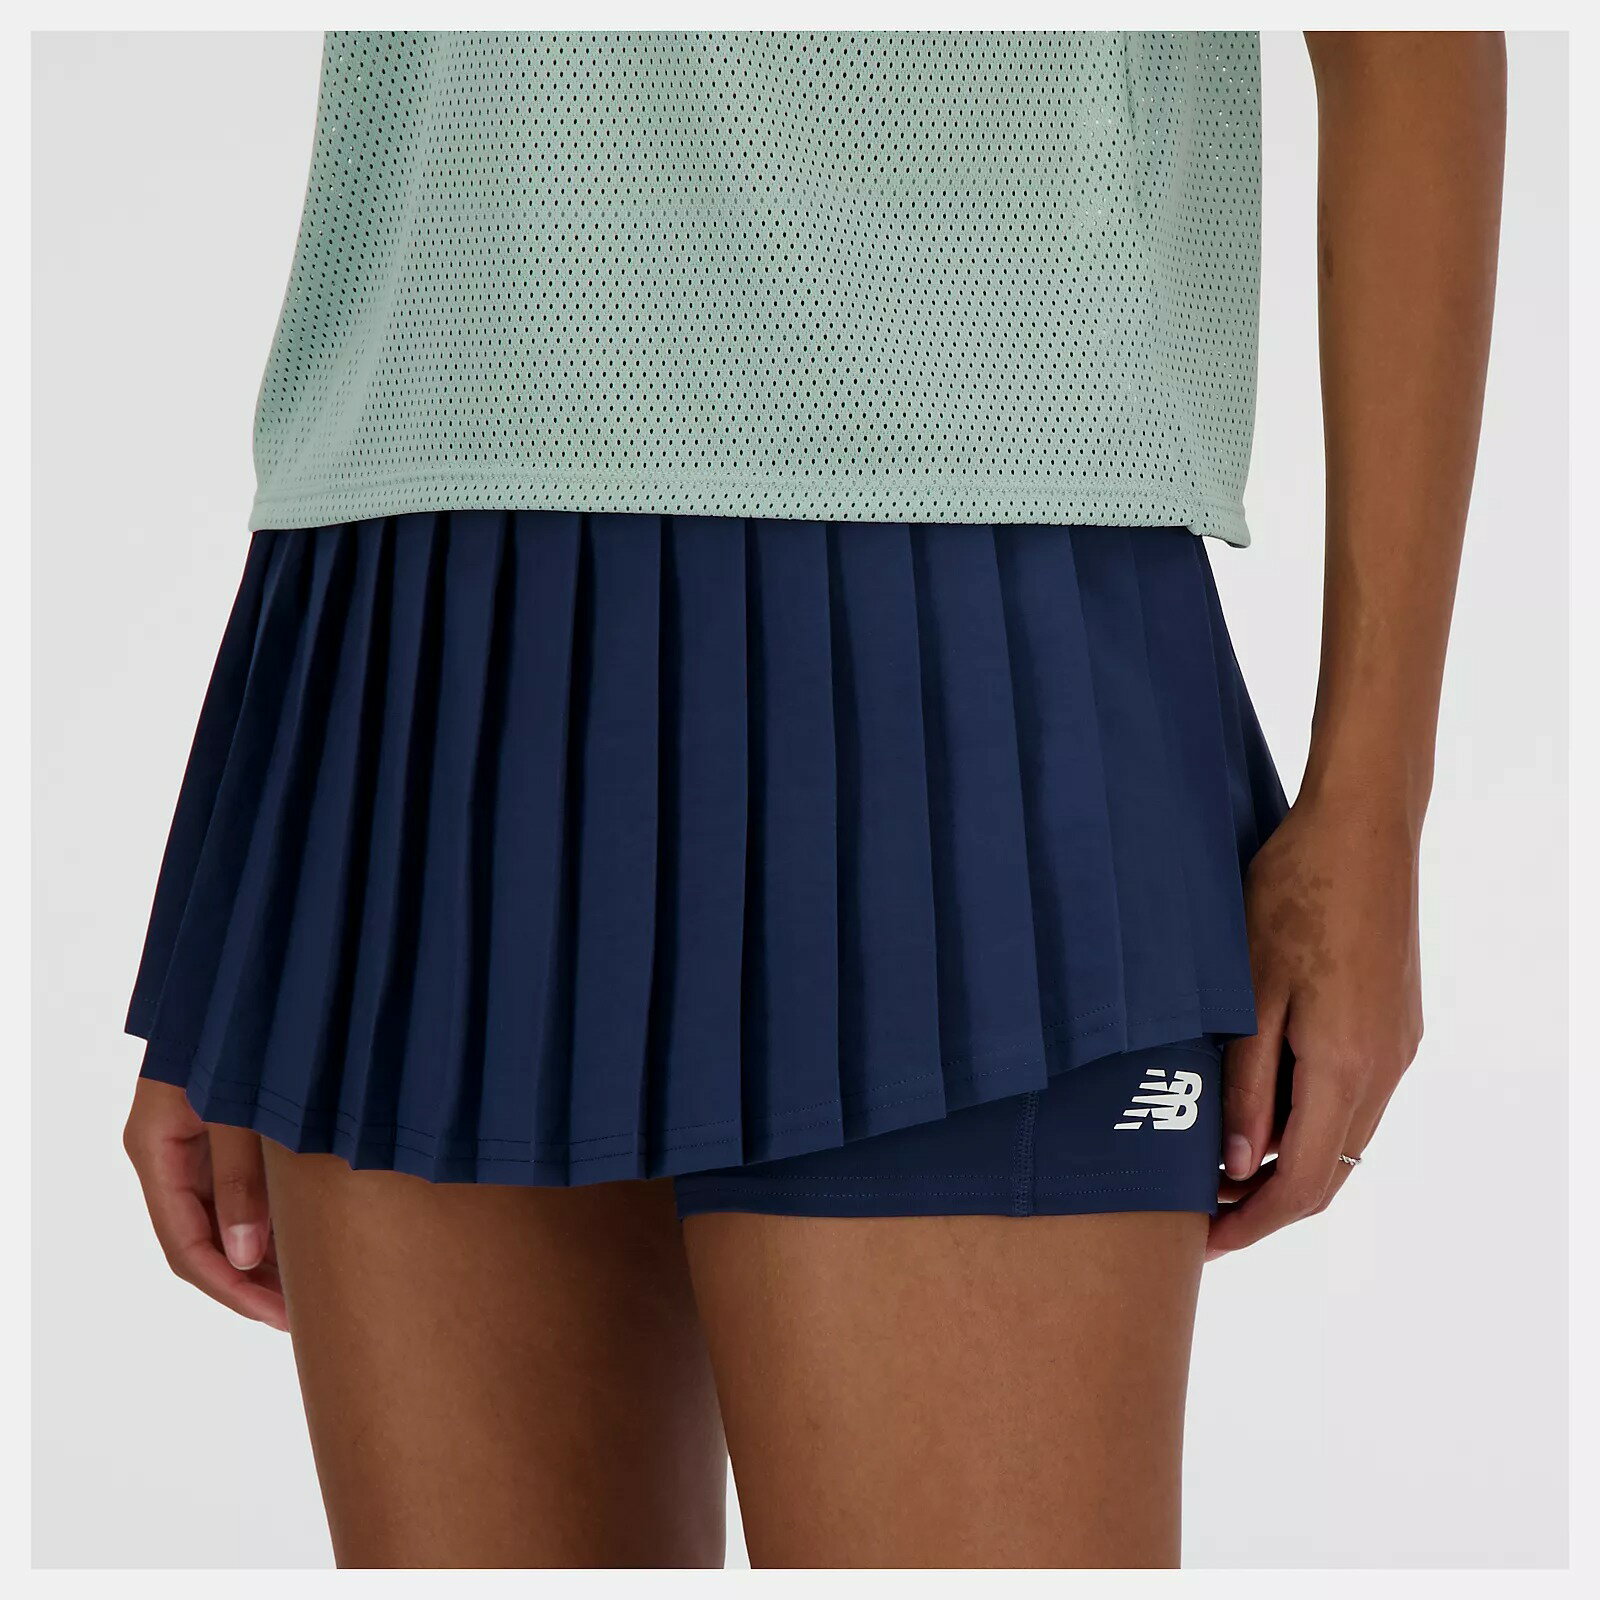 【滿額現折300】NEW BALANCE 短褲裙 NB 深藍 口袋 網球 運動褲裙 女 WK41402NNY